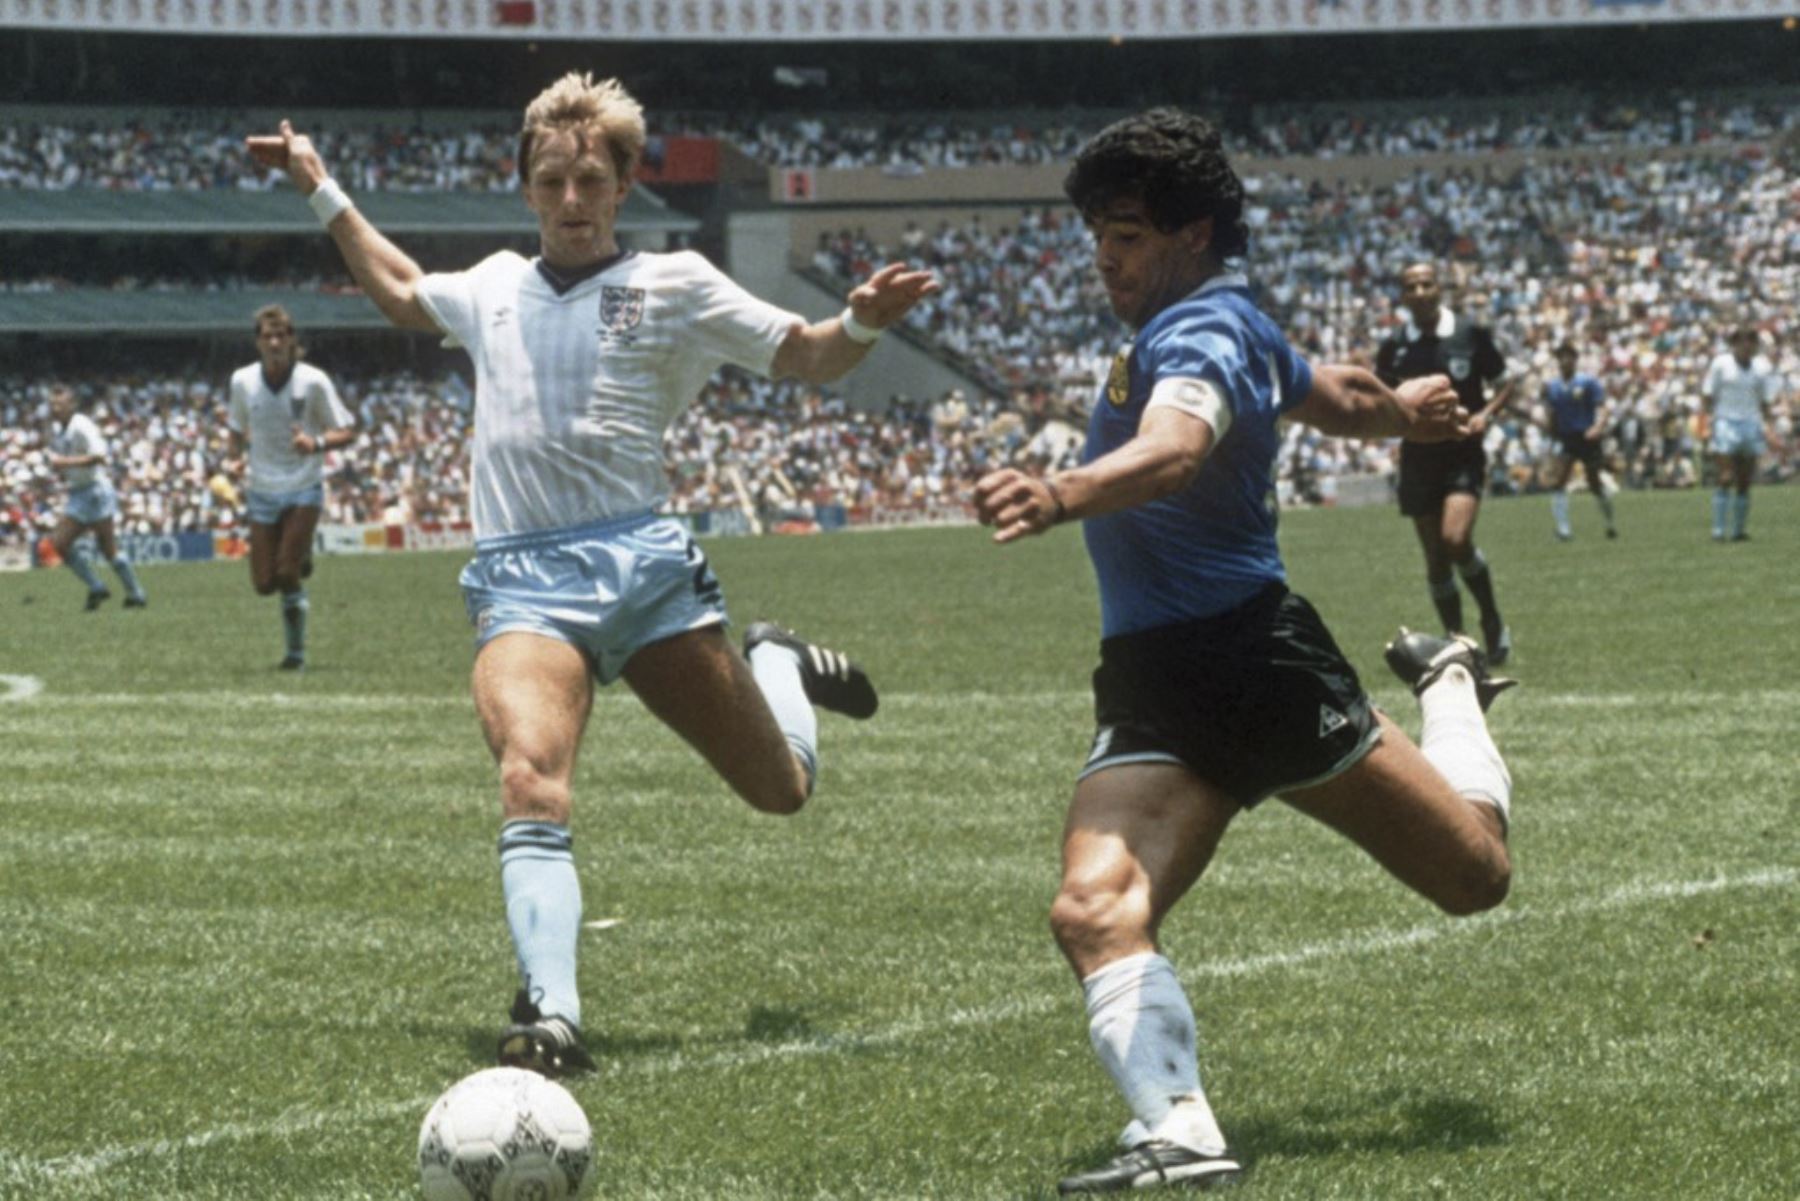 Se cumplen 35 años del gol de Diego Armando Maradona a los Ingleses en el mundial México 86, considerado por muchos como el mejor gol en la historia de los mundiales. Ese día Argentina venció 2-1 a Inglaterra con dos goles de Maradona, incluido uno con la mano. Foto: AFP